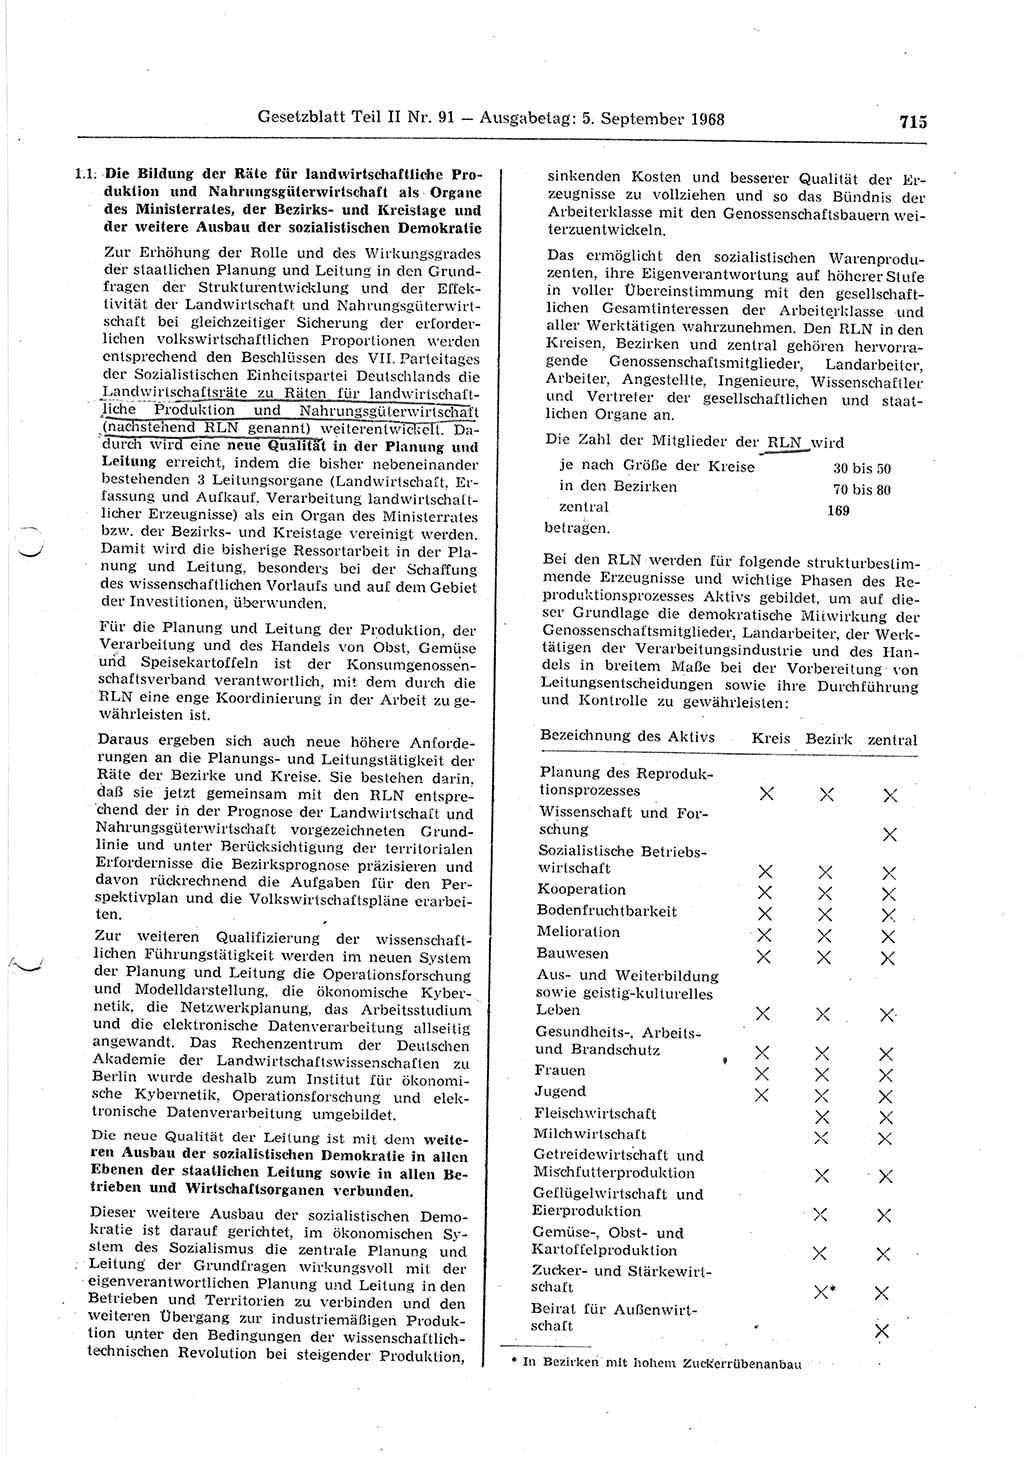 Gesetzblatt (GBl.) der Deutschen Demokratischen Republik (DDR) Teil ⅠⅠ 1968, Seite 715 (GBl. DDR ⅠⅠ 1968, S. 715)